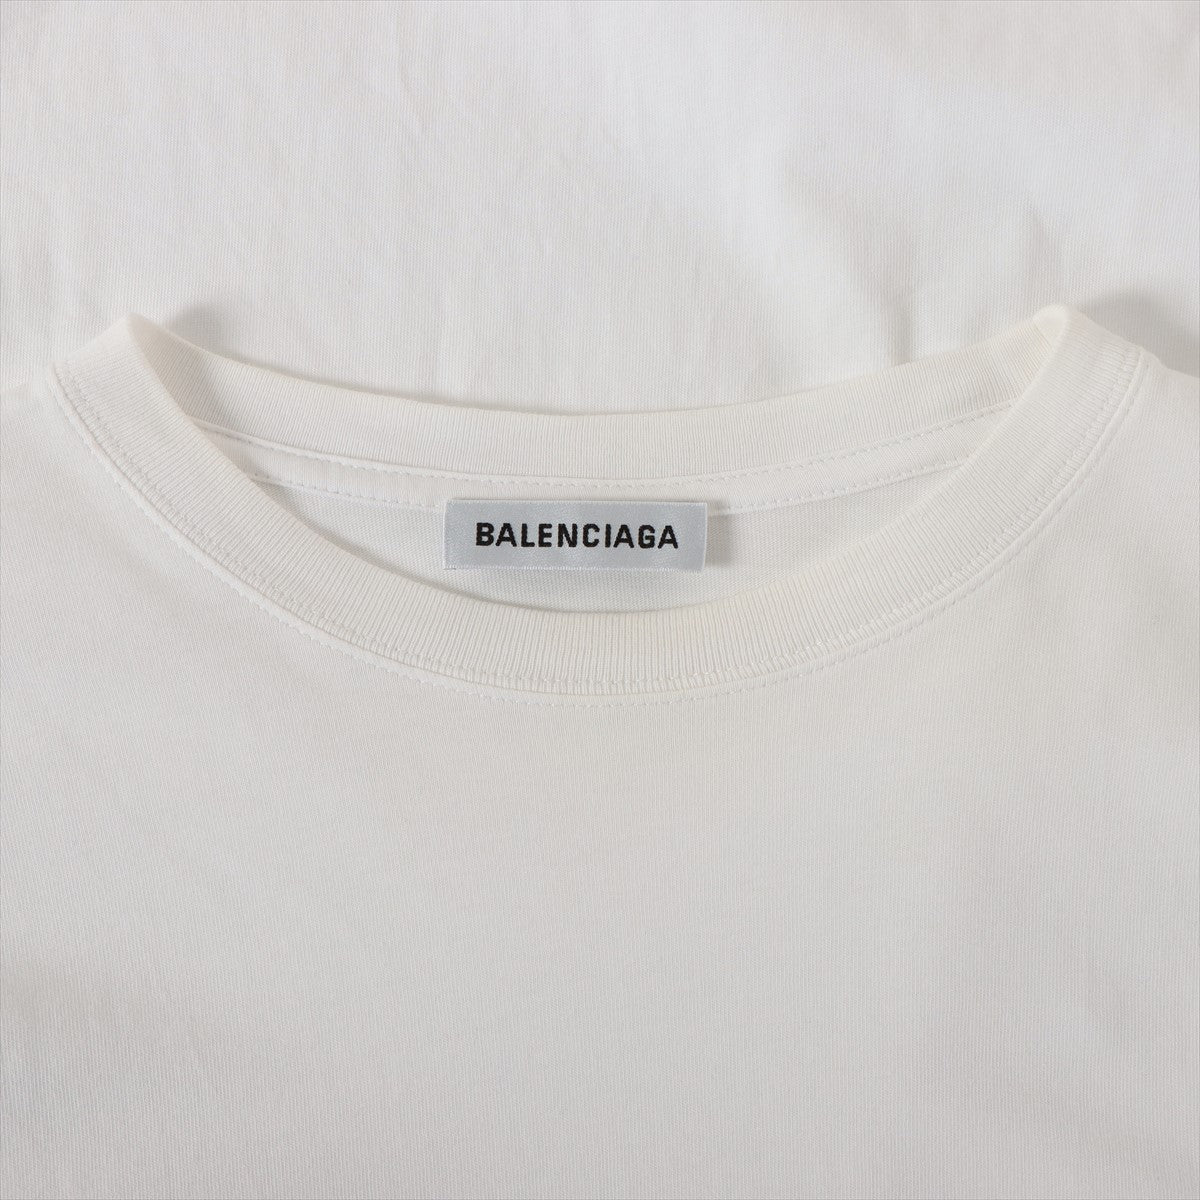 バレンシアガ 18年 コットン Tシャツ M メンズ ホワイト ロゴプリント